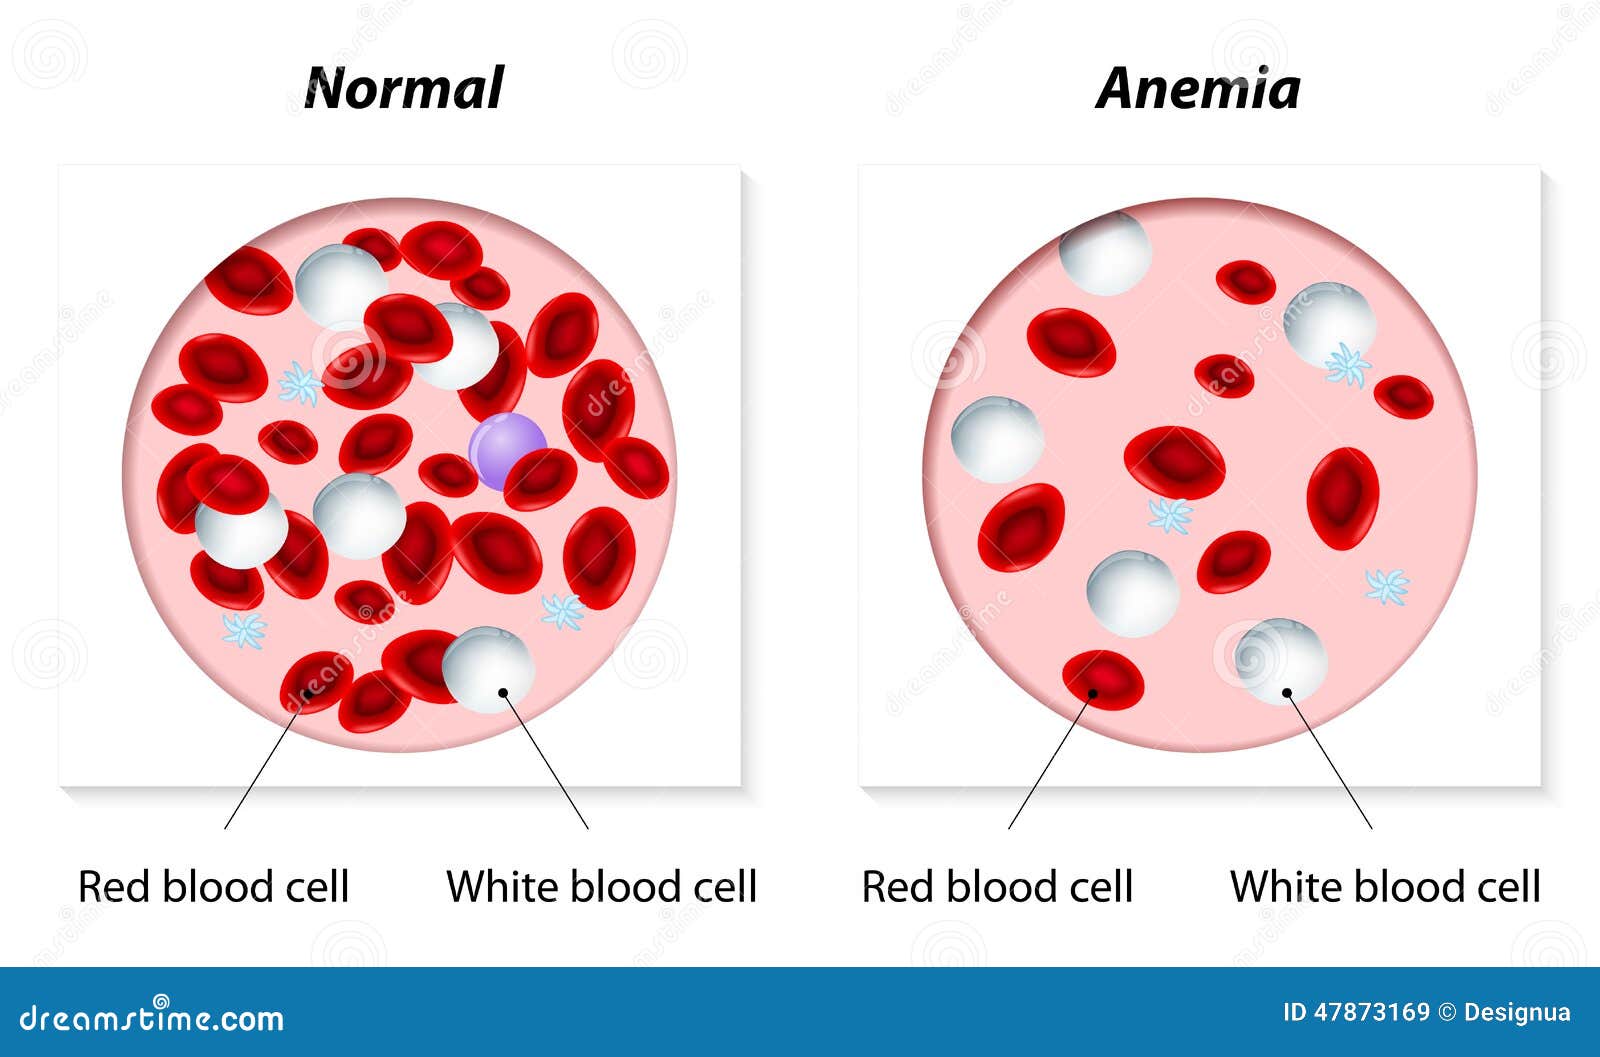 Анемия мышцы. Эритроциты при железодефицитной анемии. Клетки крови при анемии. Железодефицитная анемия животных симптомы. Красные клетки крови.